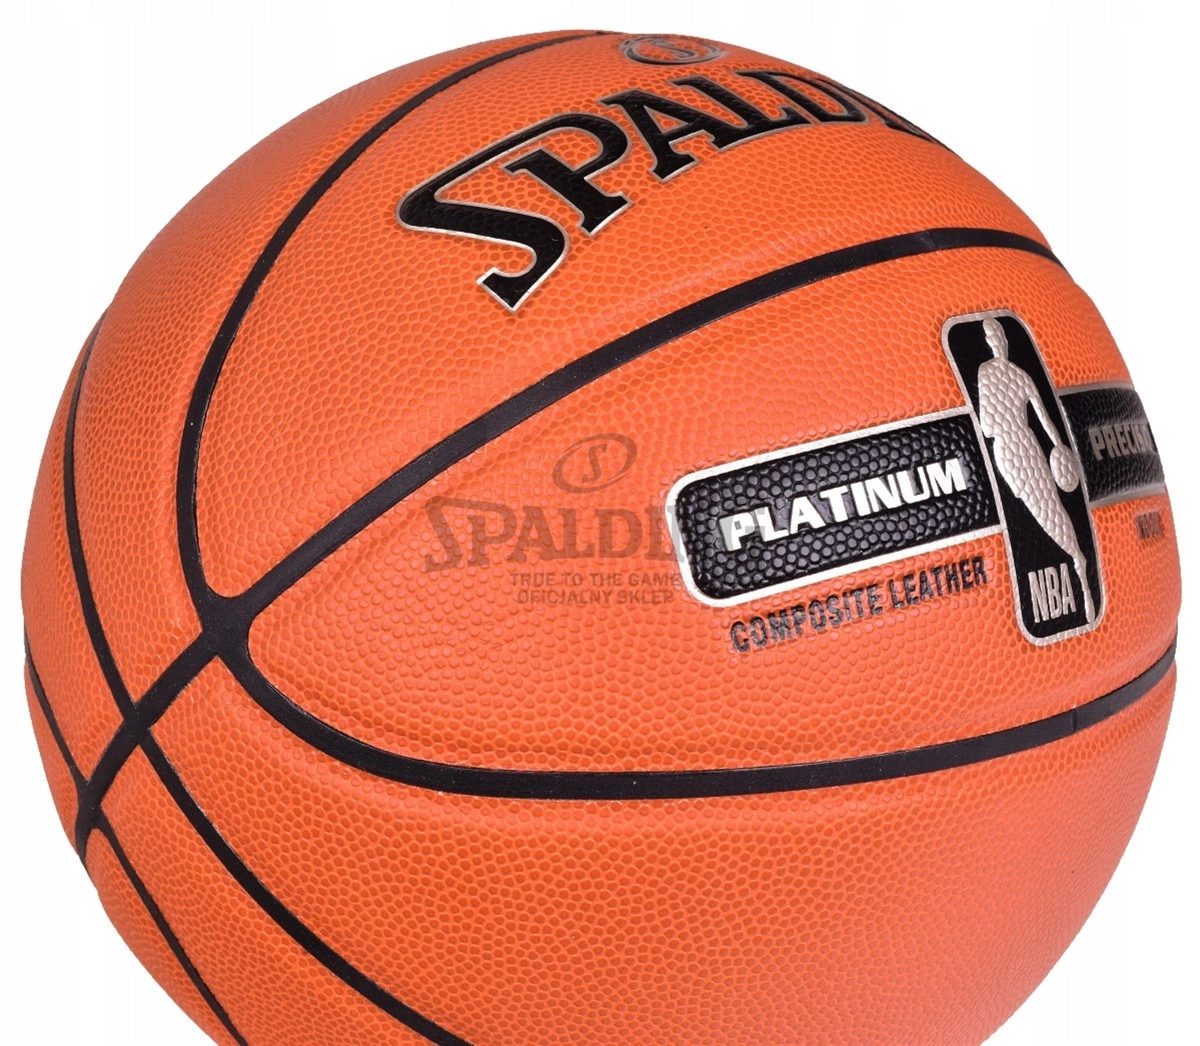 SPALDING NBA Platinum precision dla piłka wózki Kup koszykówki samochodowe dzieci, zabawki - foteliki Neonn - 7 dziecięce, w